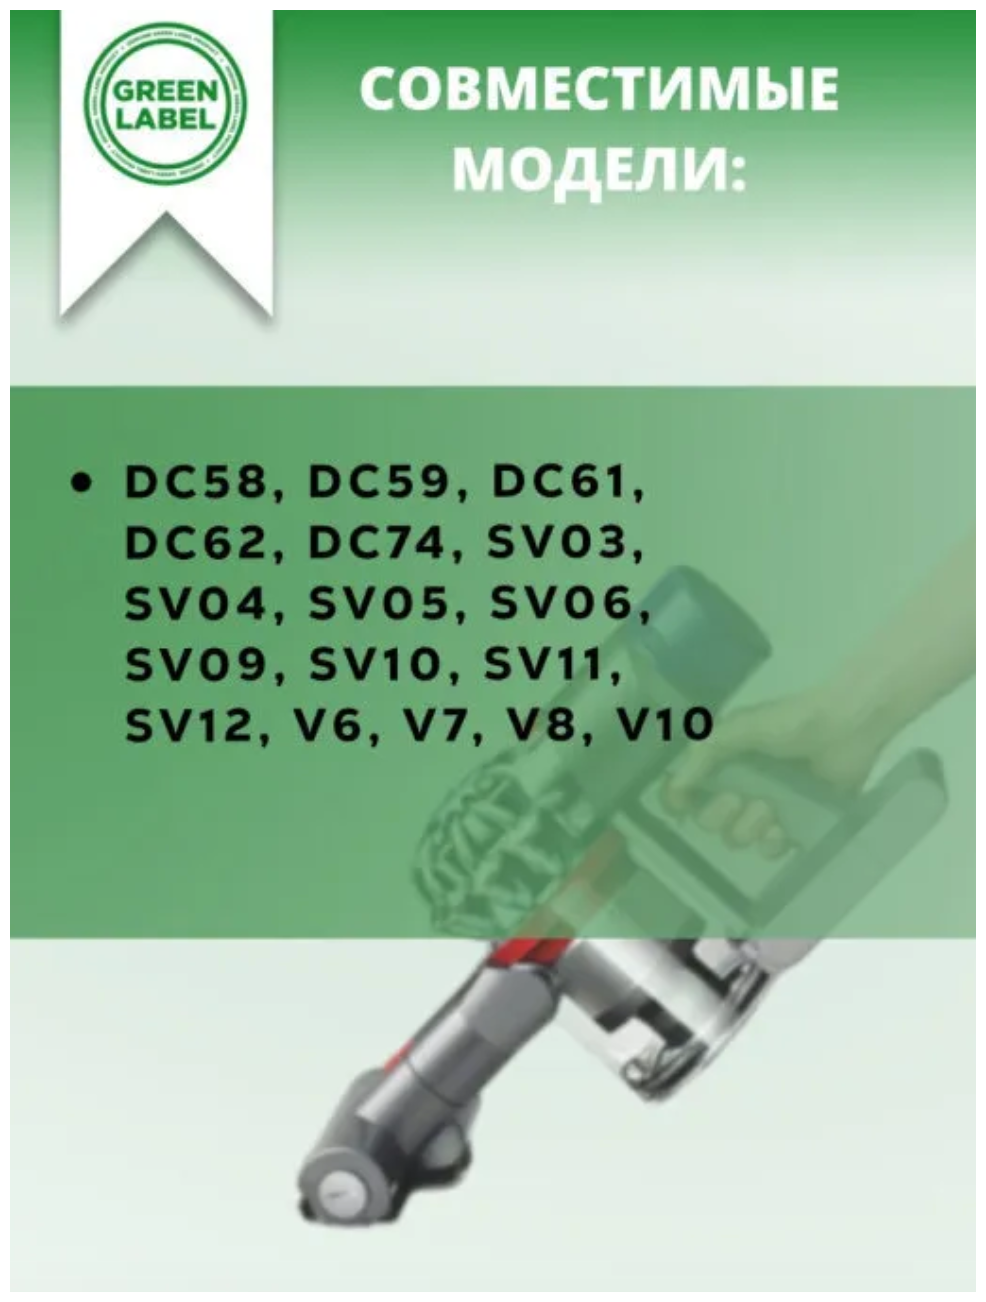 Green Label, Предмоторный фильтр для пылесосов Dyson серий DC58, DC59, DC61, DC62, DC74, SV03, SV04, SV05, SV06, SV09 и др